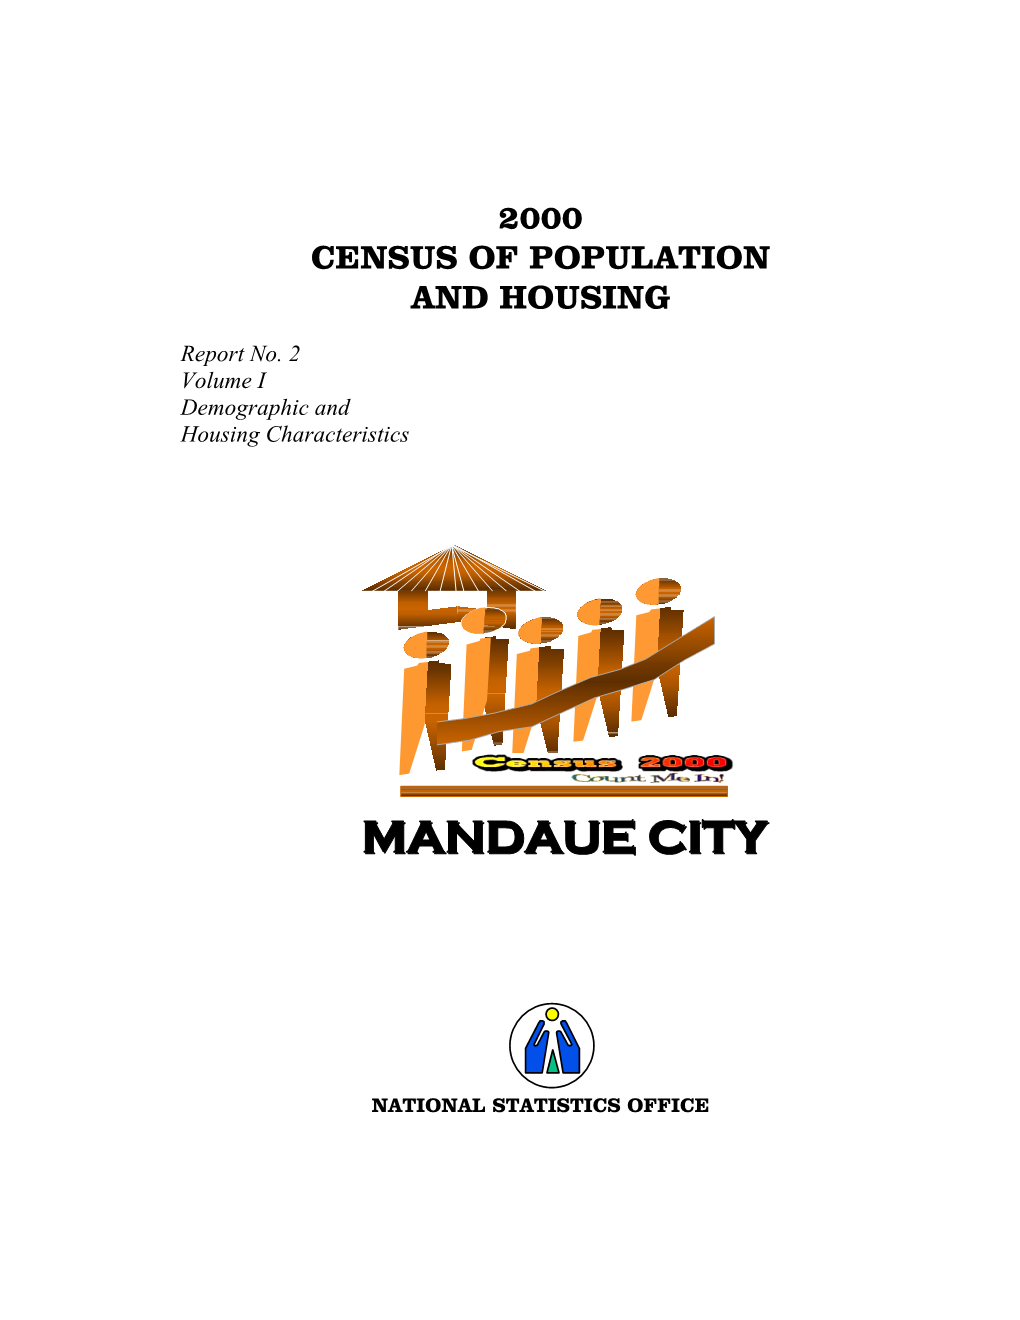 Mandaue City 259,728